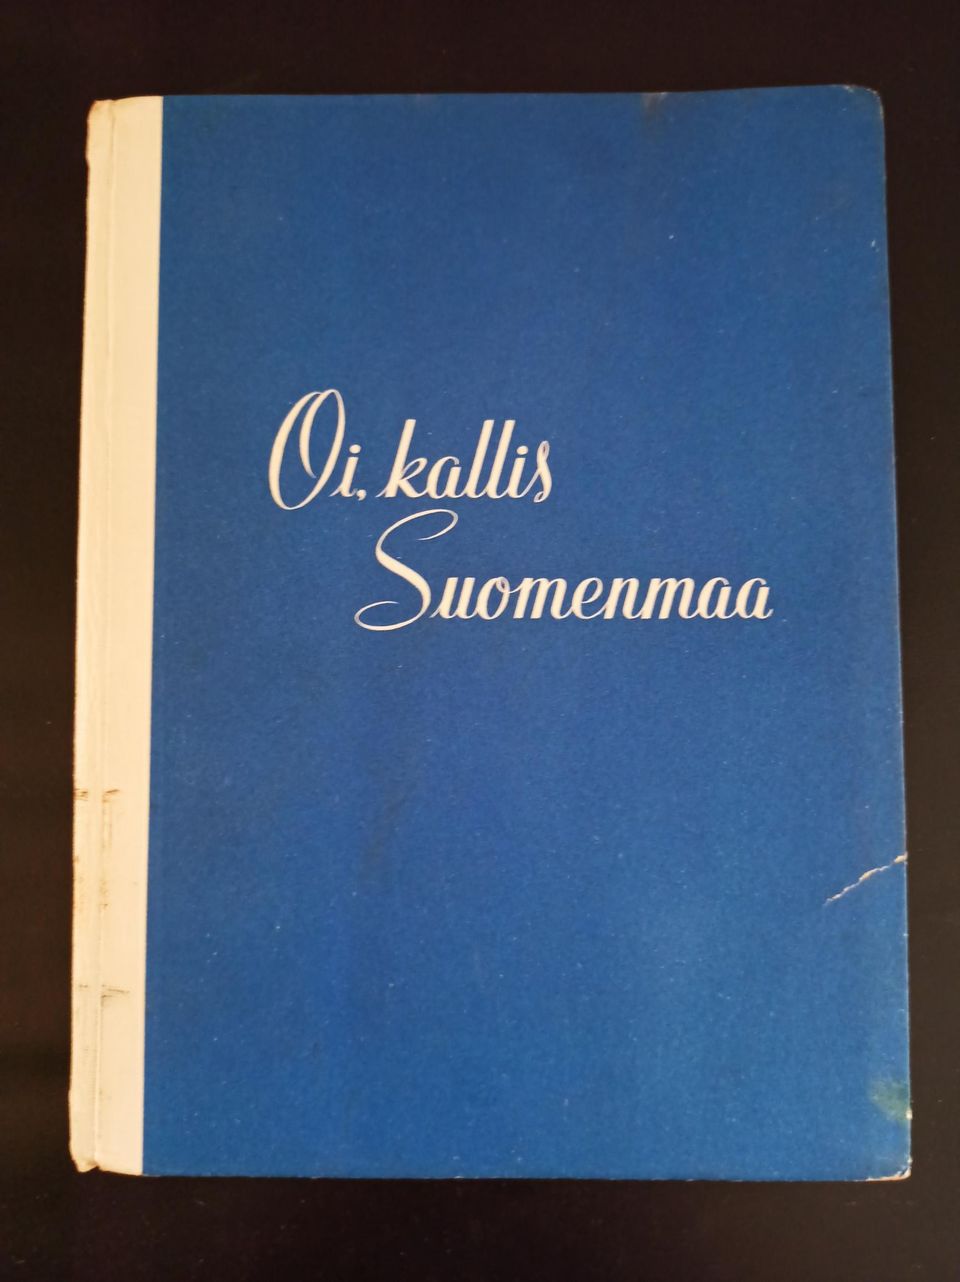 Oi, kallis Suomenmaa runo kirja, v. 1951